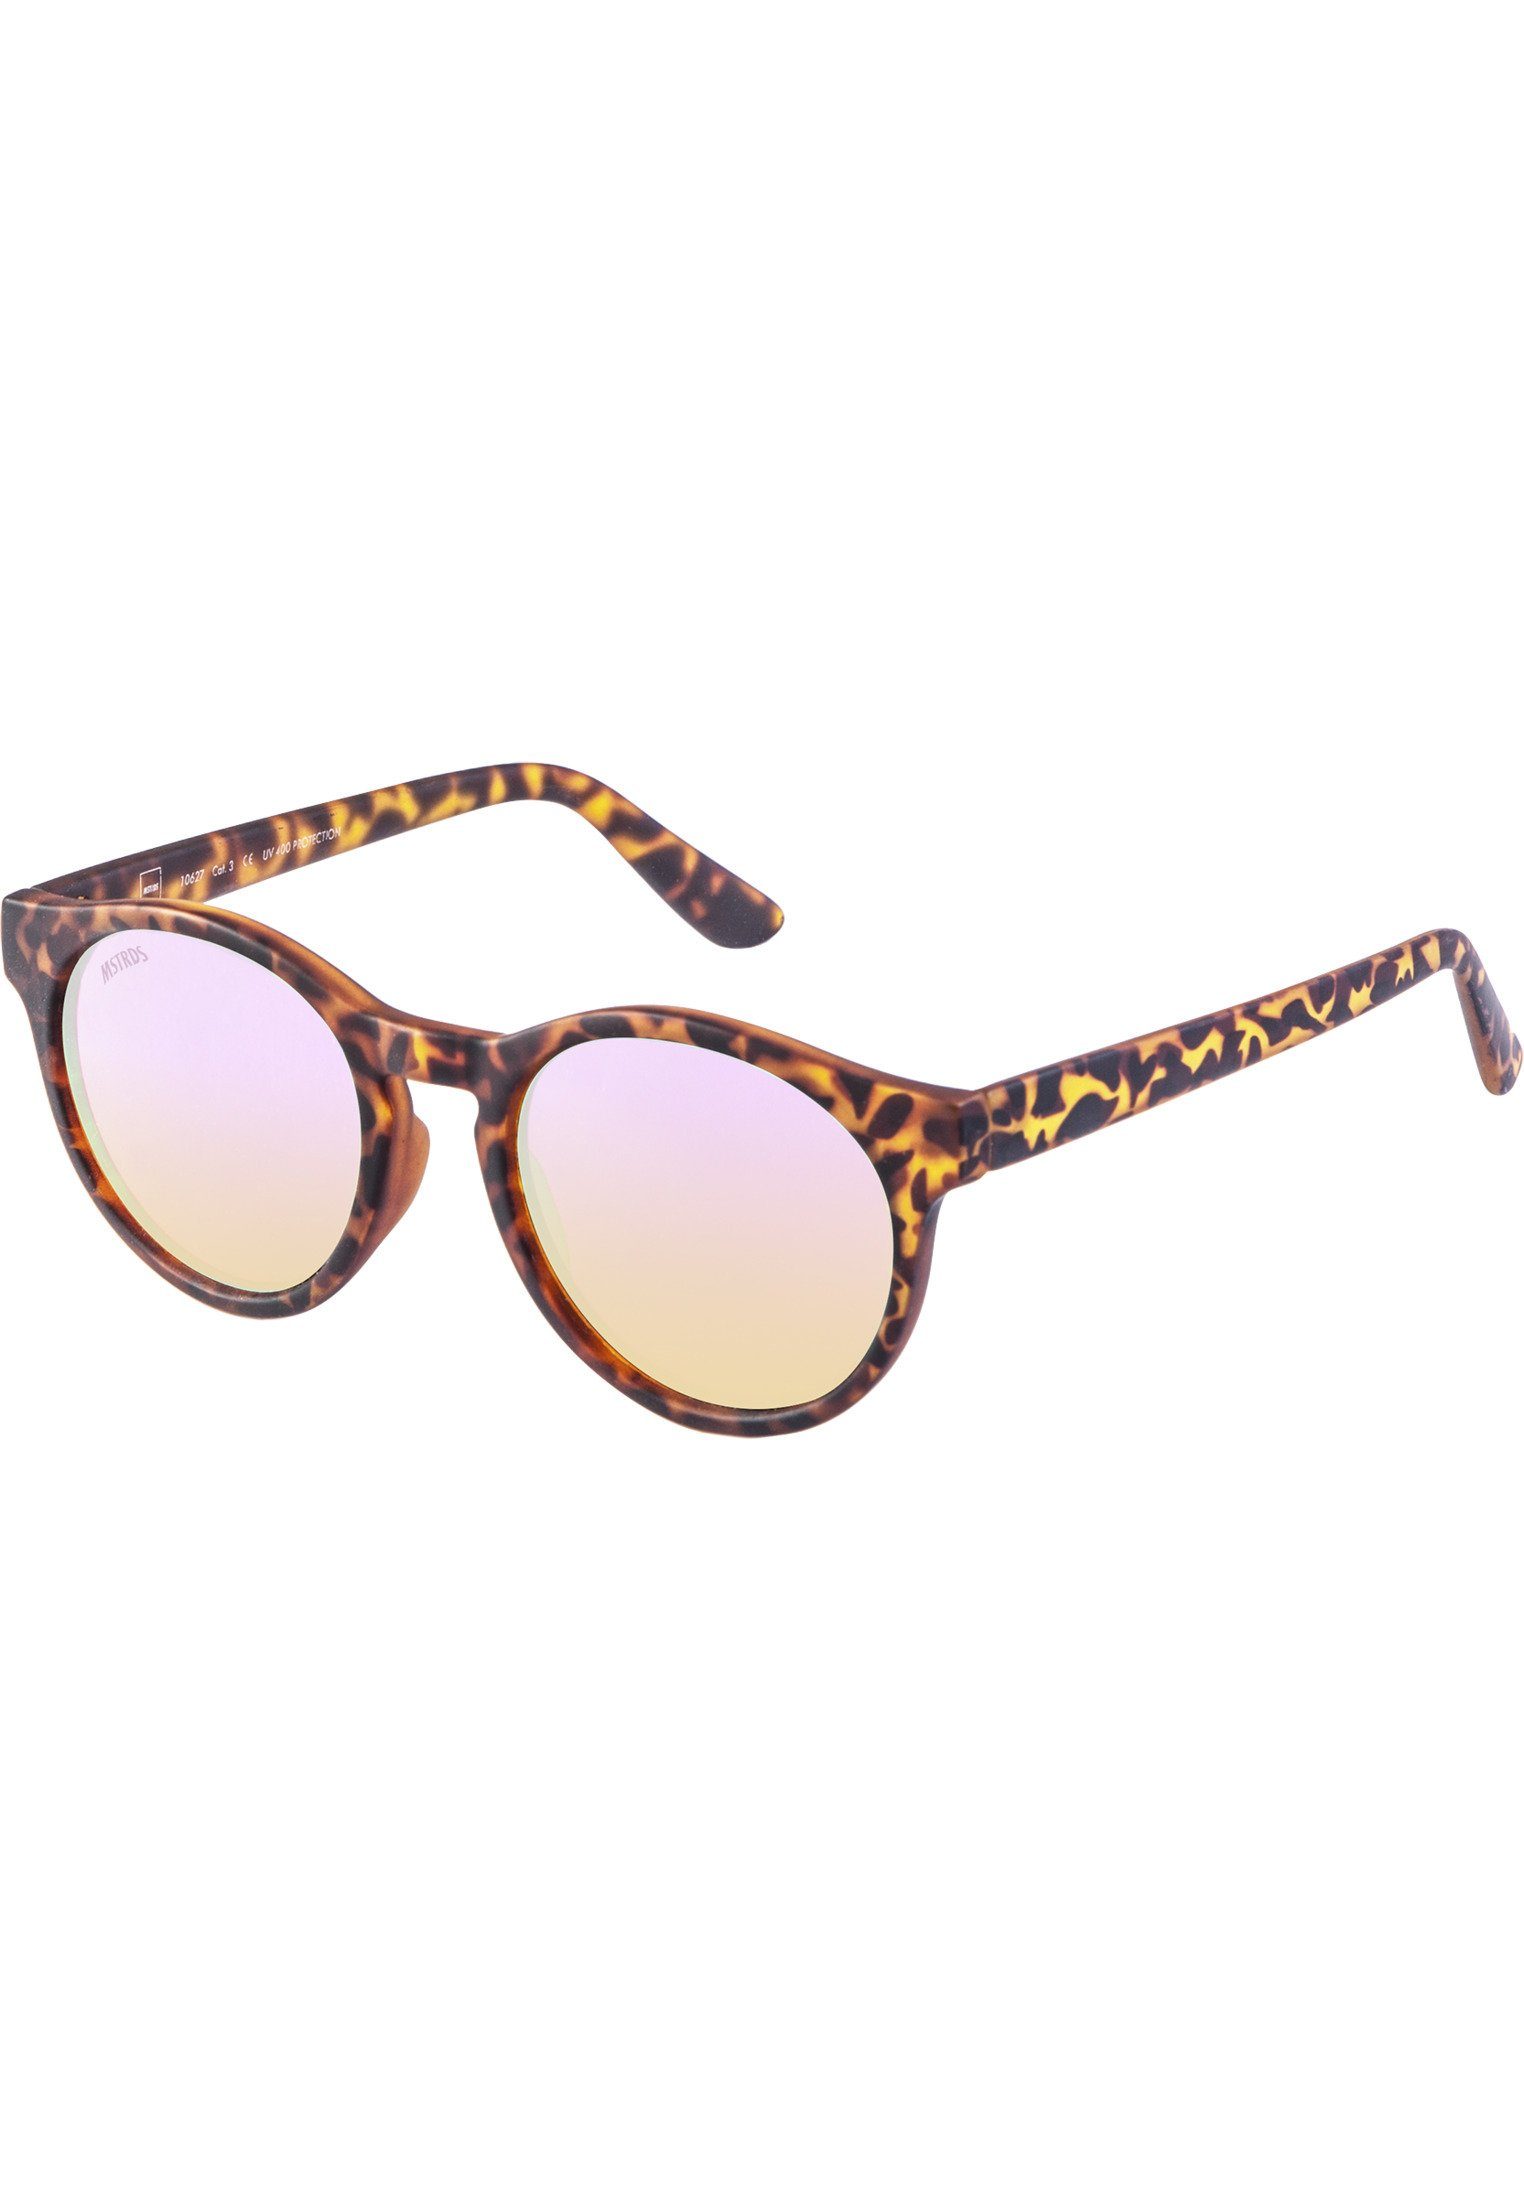 havanna/rosé Sonnenbrille Accessoires Sunrise Sunglasses MSTRDS